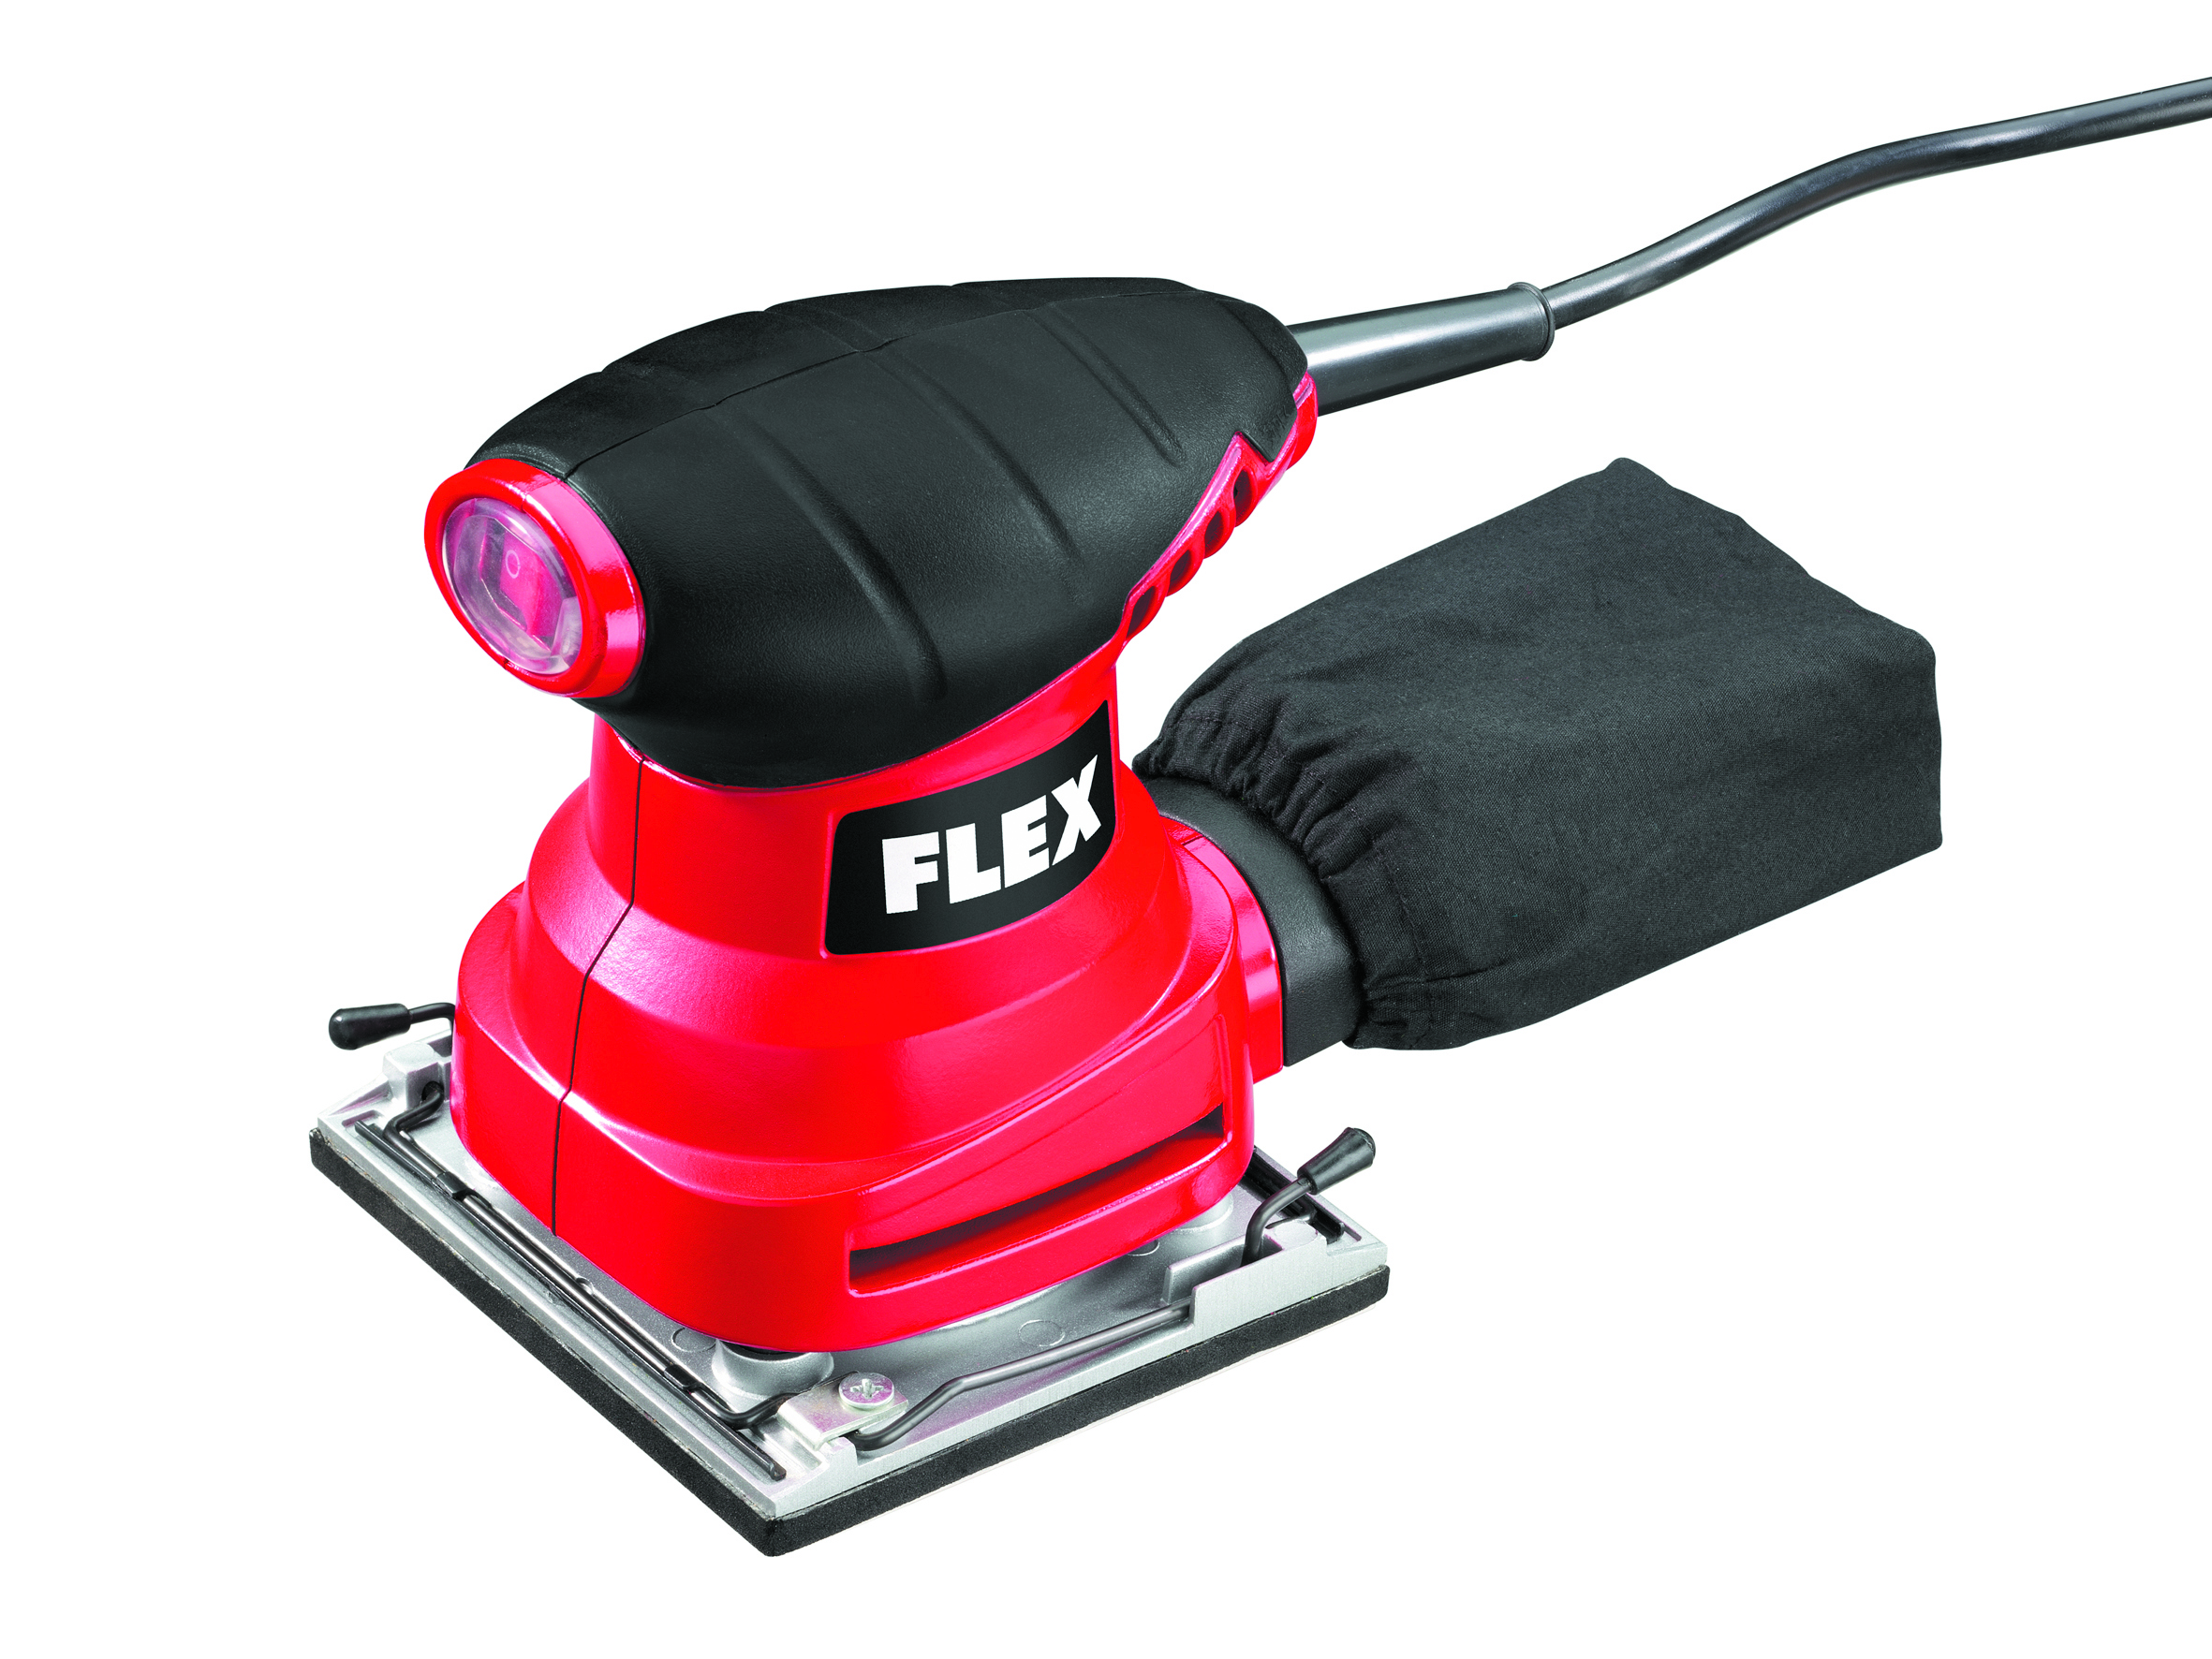 FLEX-ELEKTROWERKZEUGE Schleifmaschinen-Set MS 713 u. XS 713 mit Schleifmittel u. Zubehör